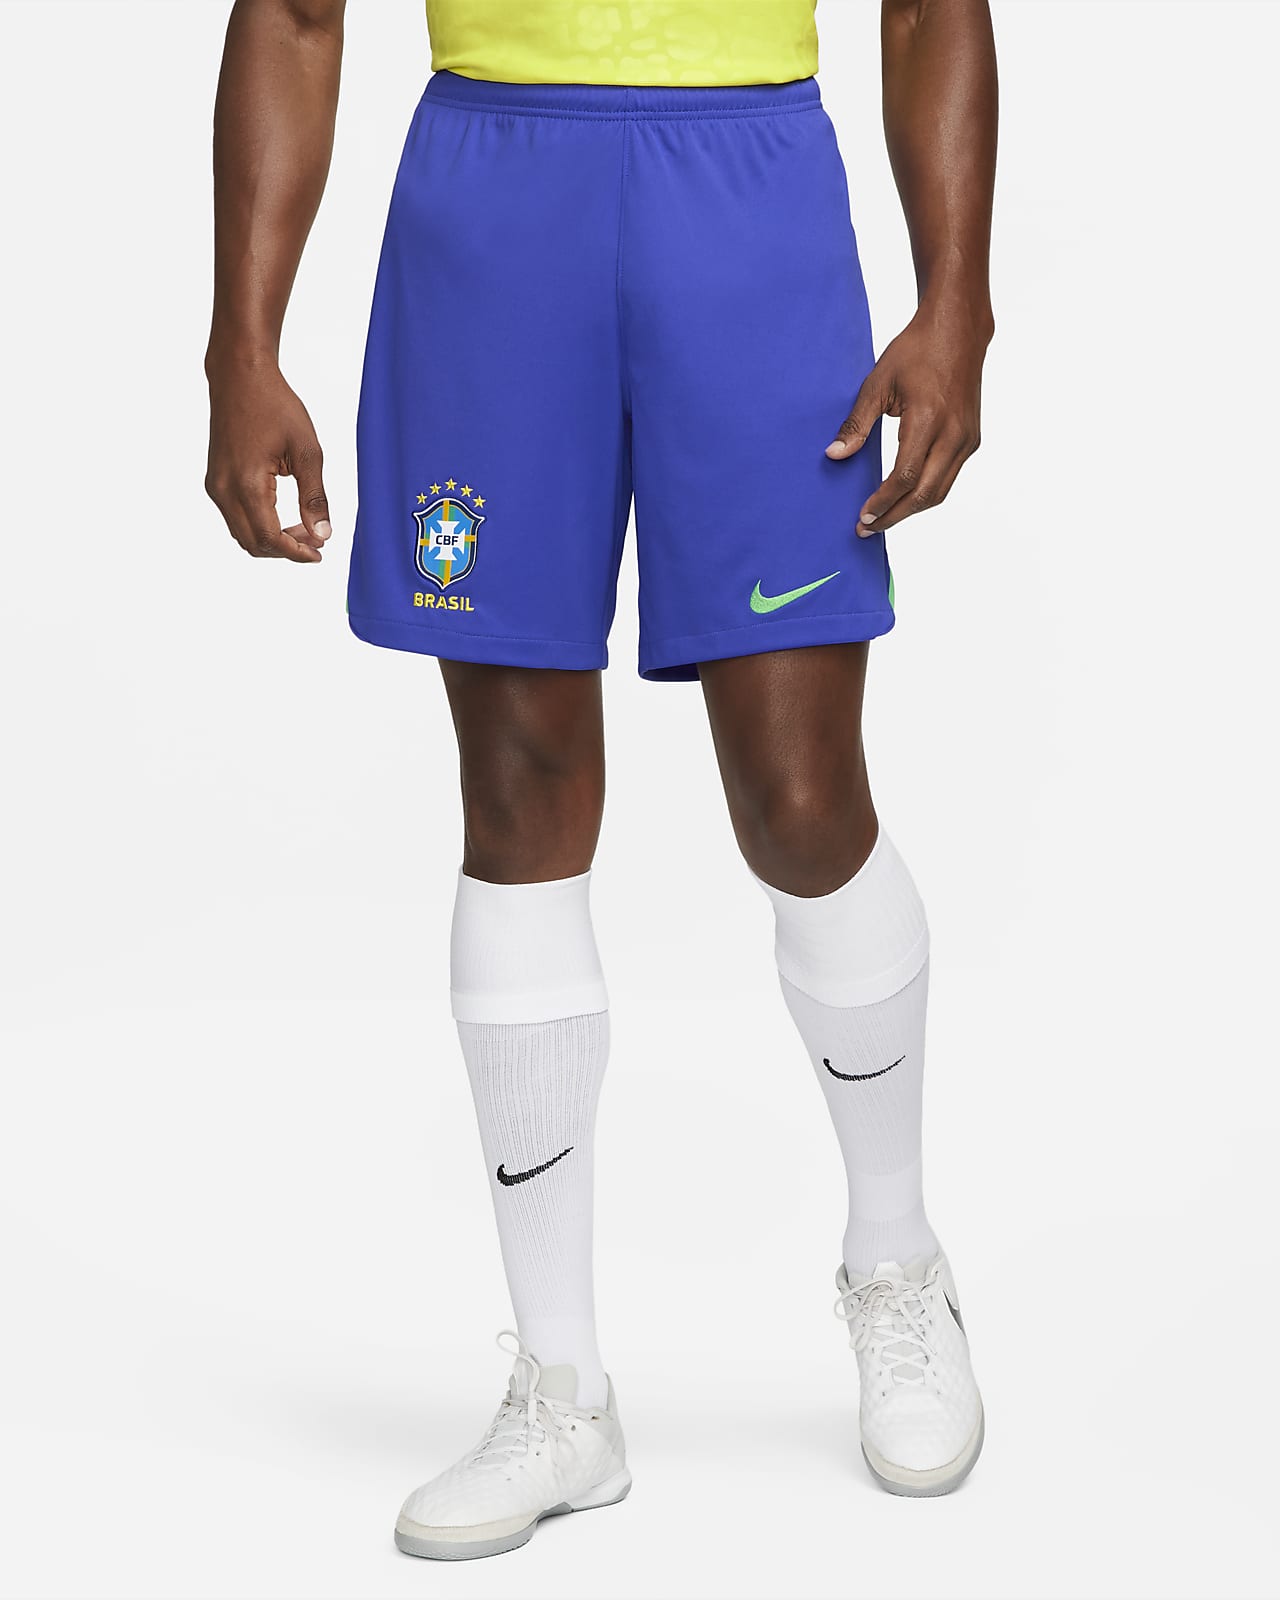 nike royal blue soccer shorts